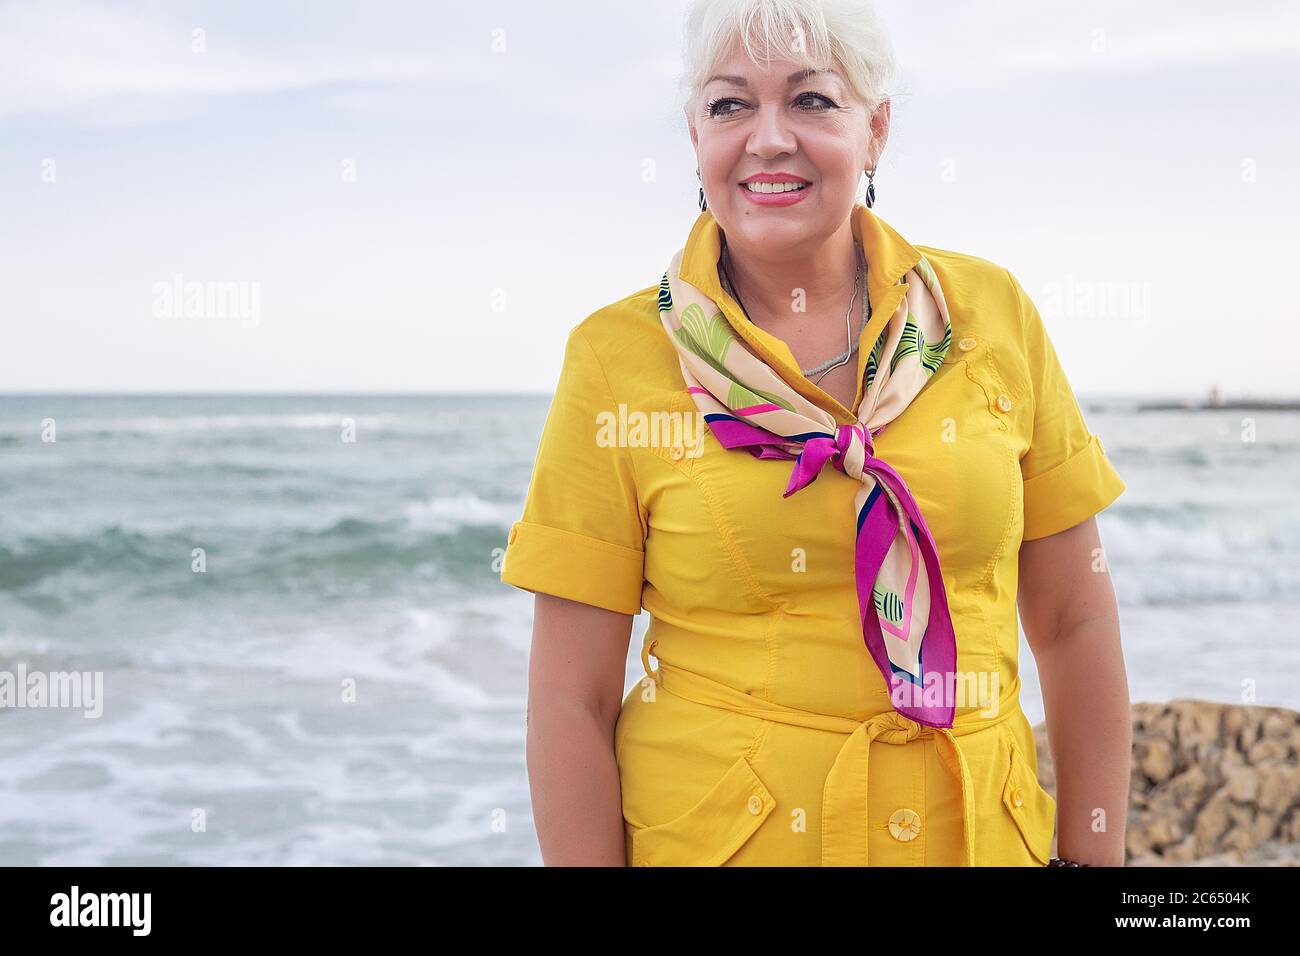 Porträt einer lächelnden Frau, die am Meer steht und ein gelbes Kleid trägt. Stockfoto